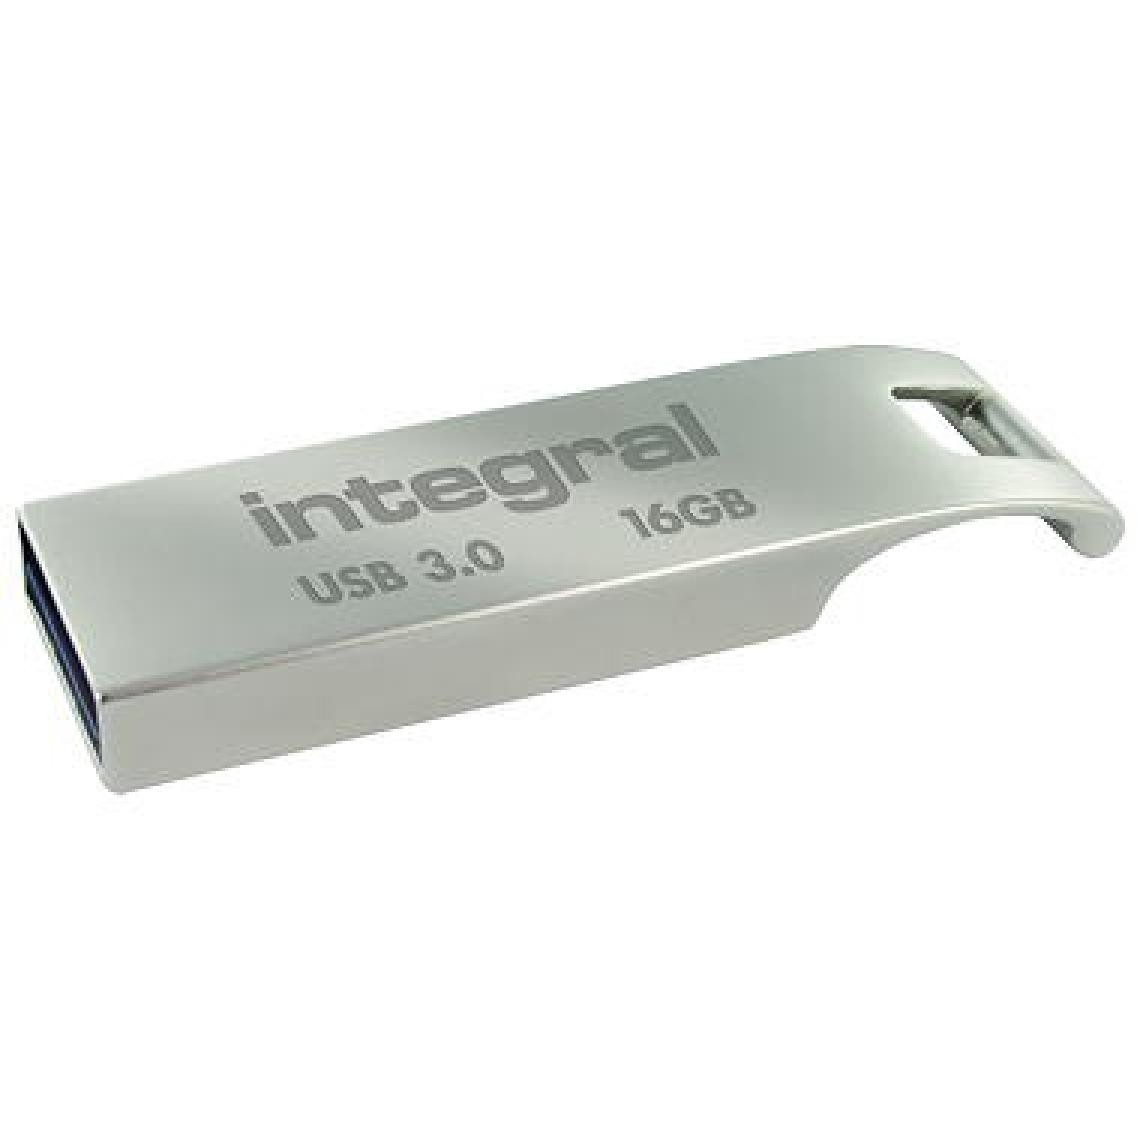 Integral - Integral Arc - Clés USB